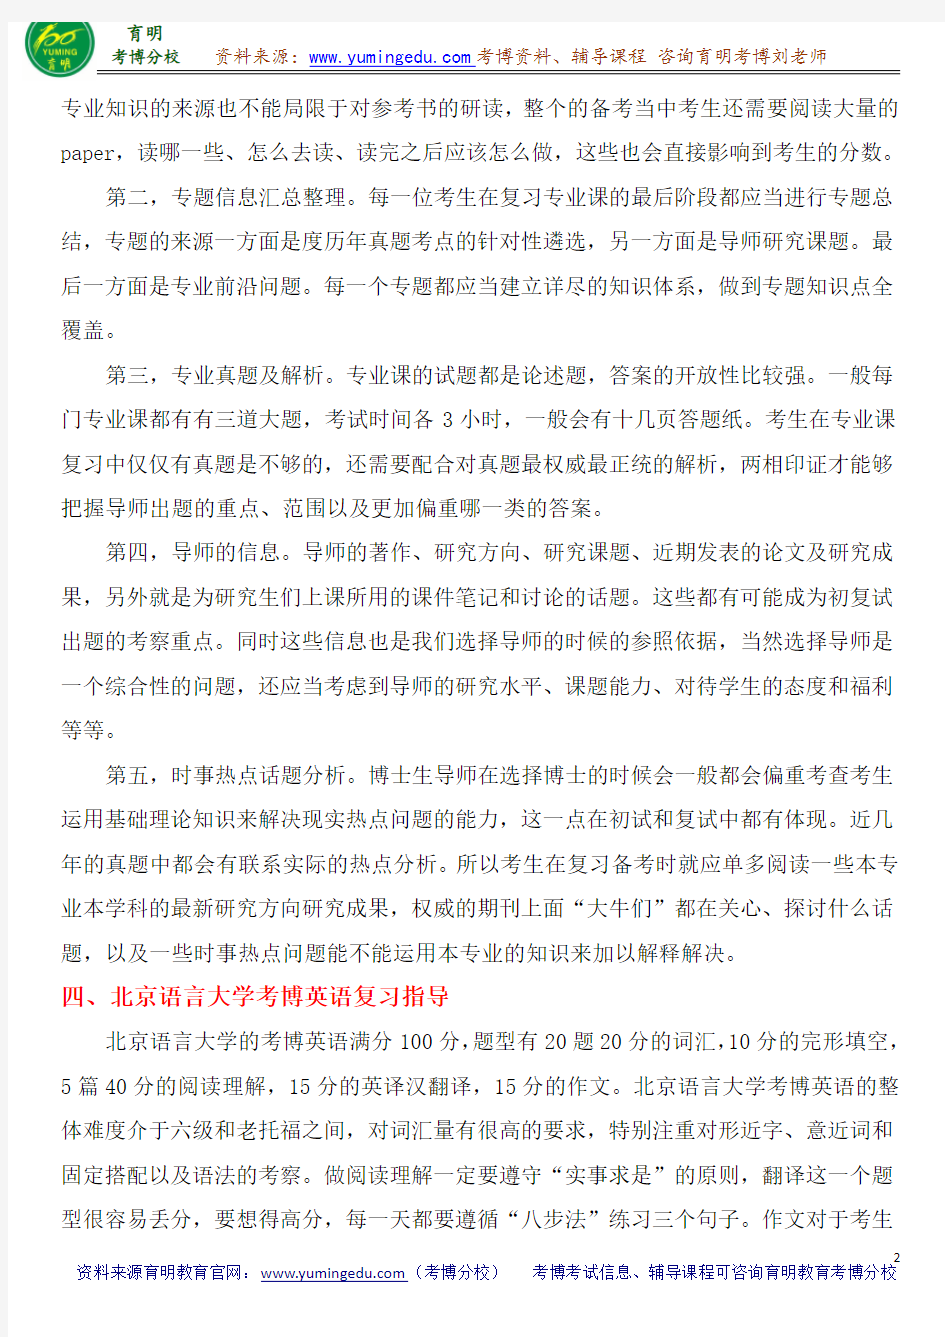 北京语言大学汉字学考博参考书目导师笔记重点